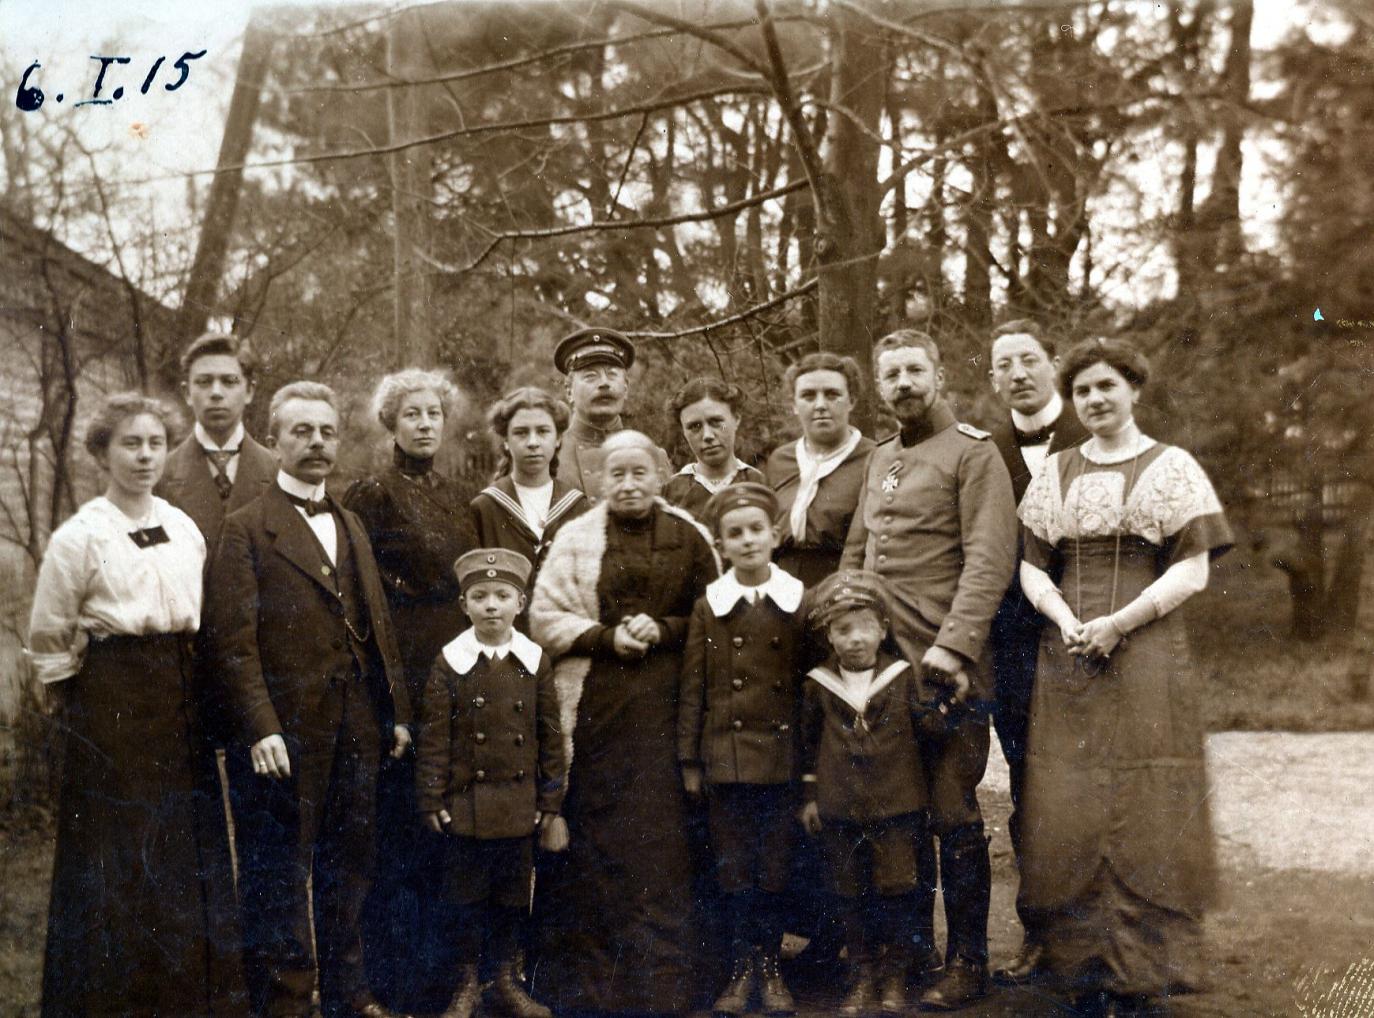 1915 - Familientreffen in Mechernich